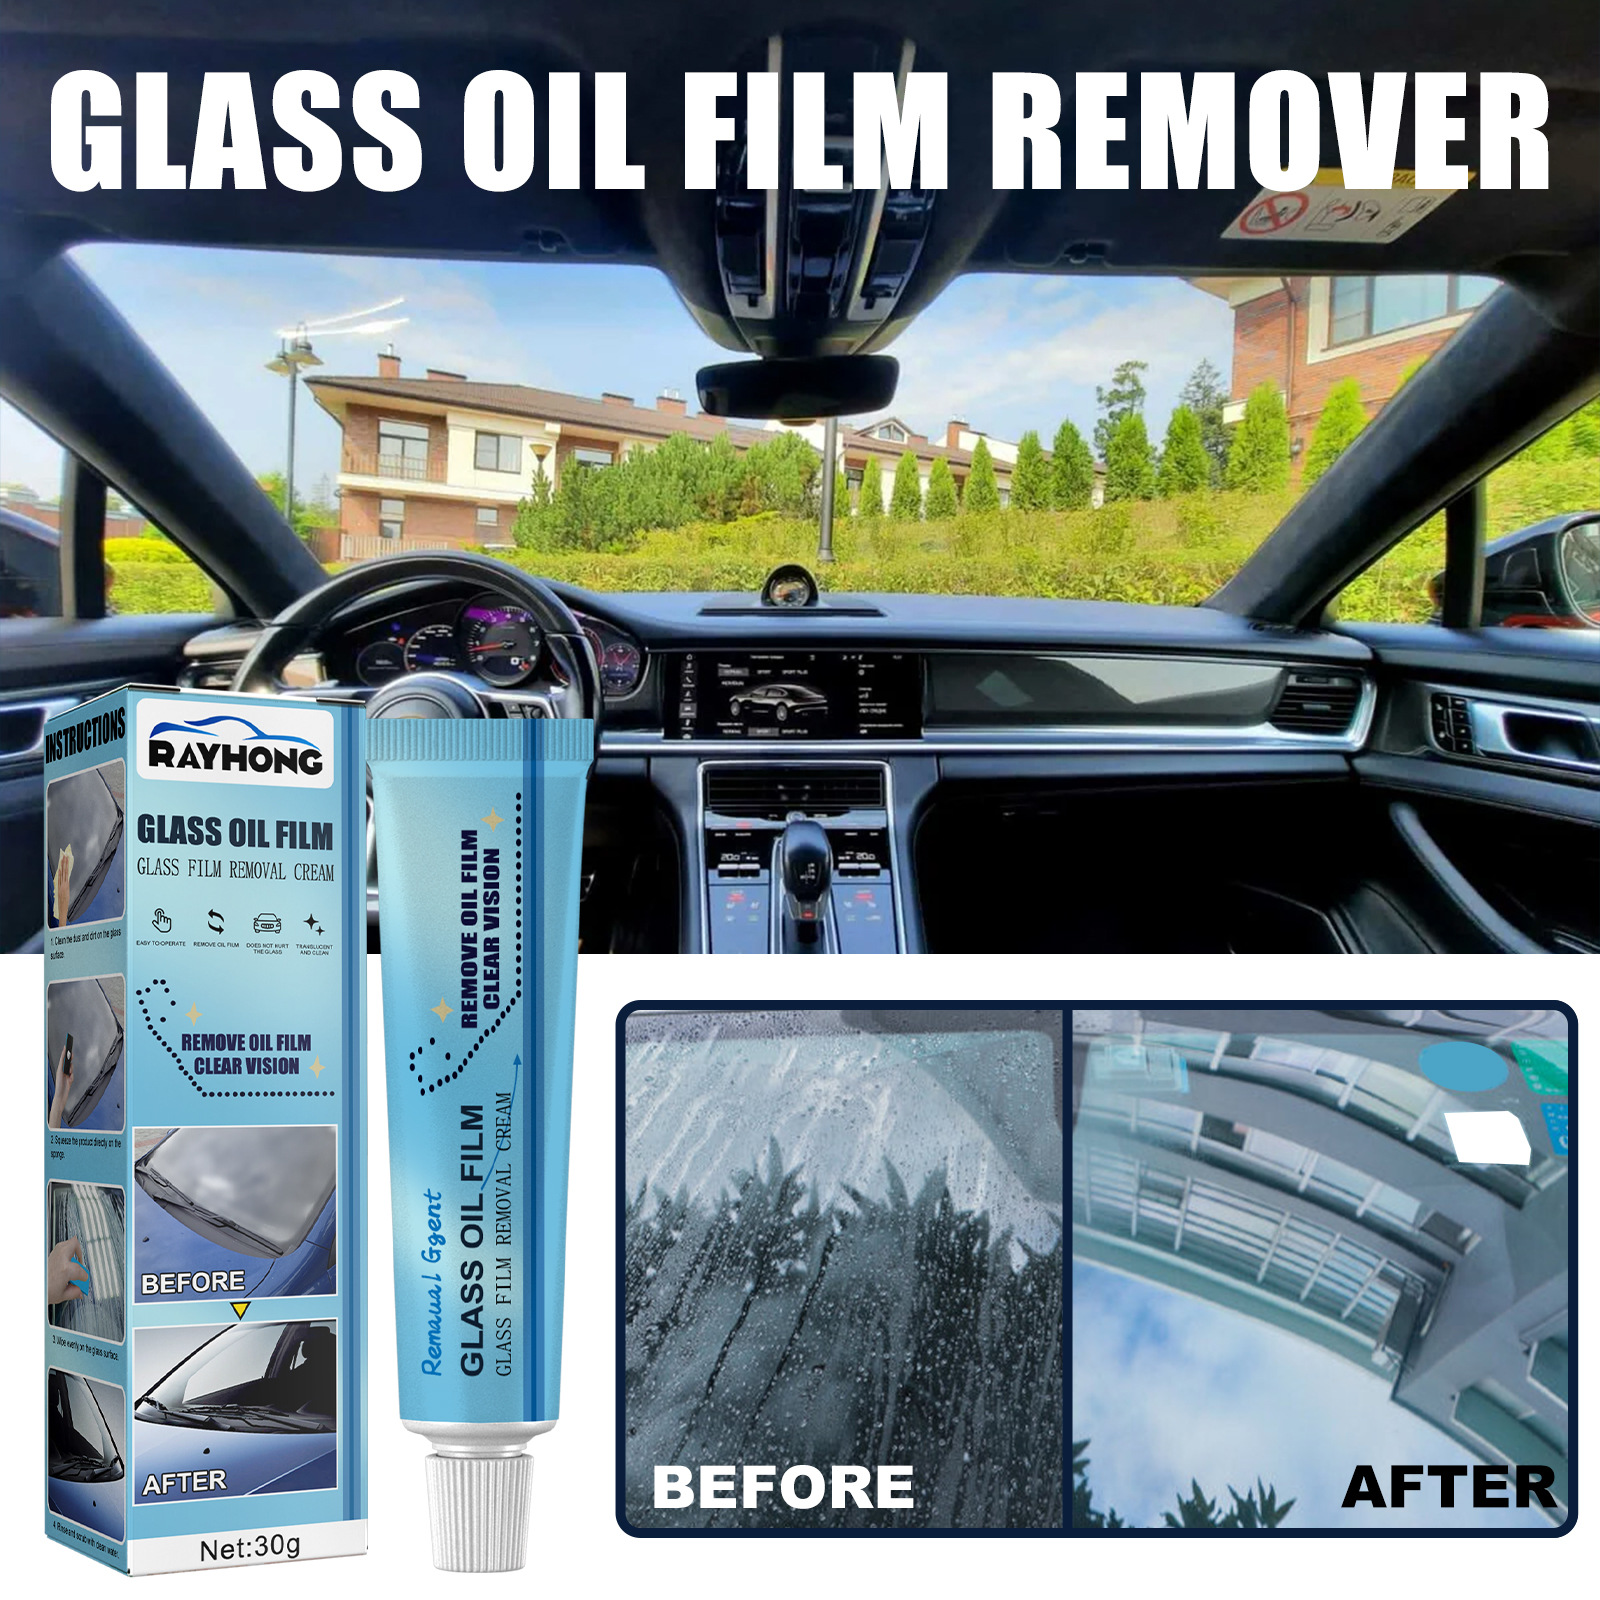 MR.KBK Glass Oil Film Remover Strong Decontamination Cleaner 加强